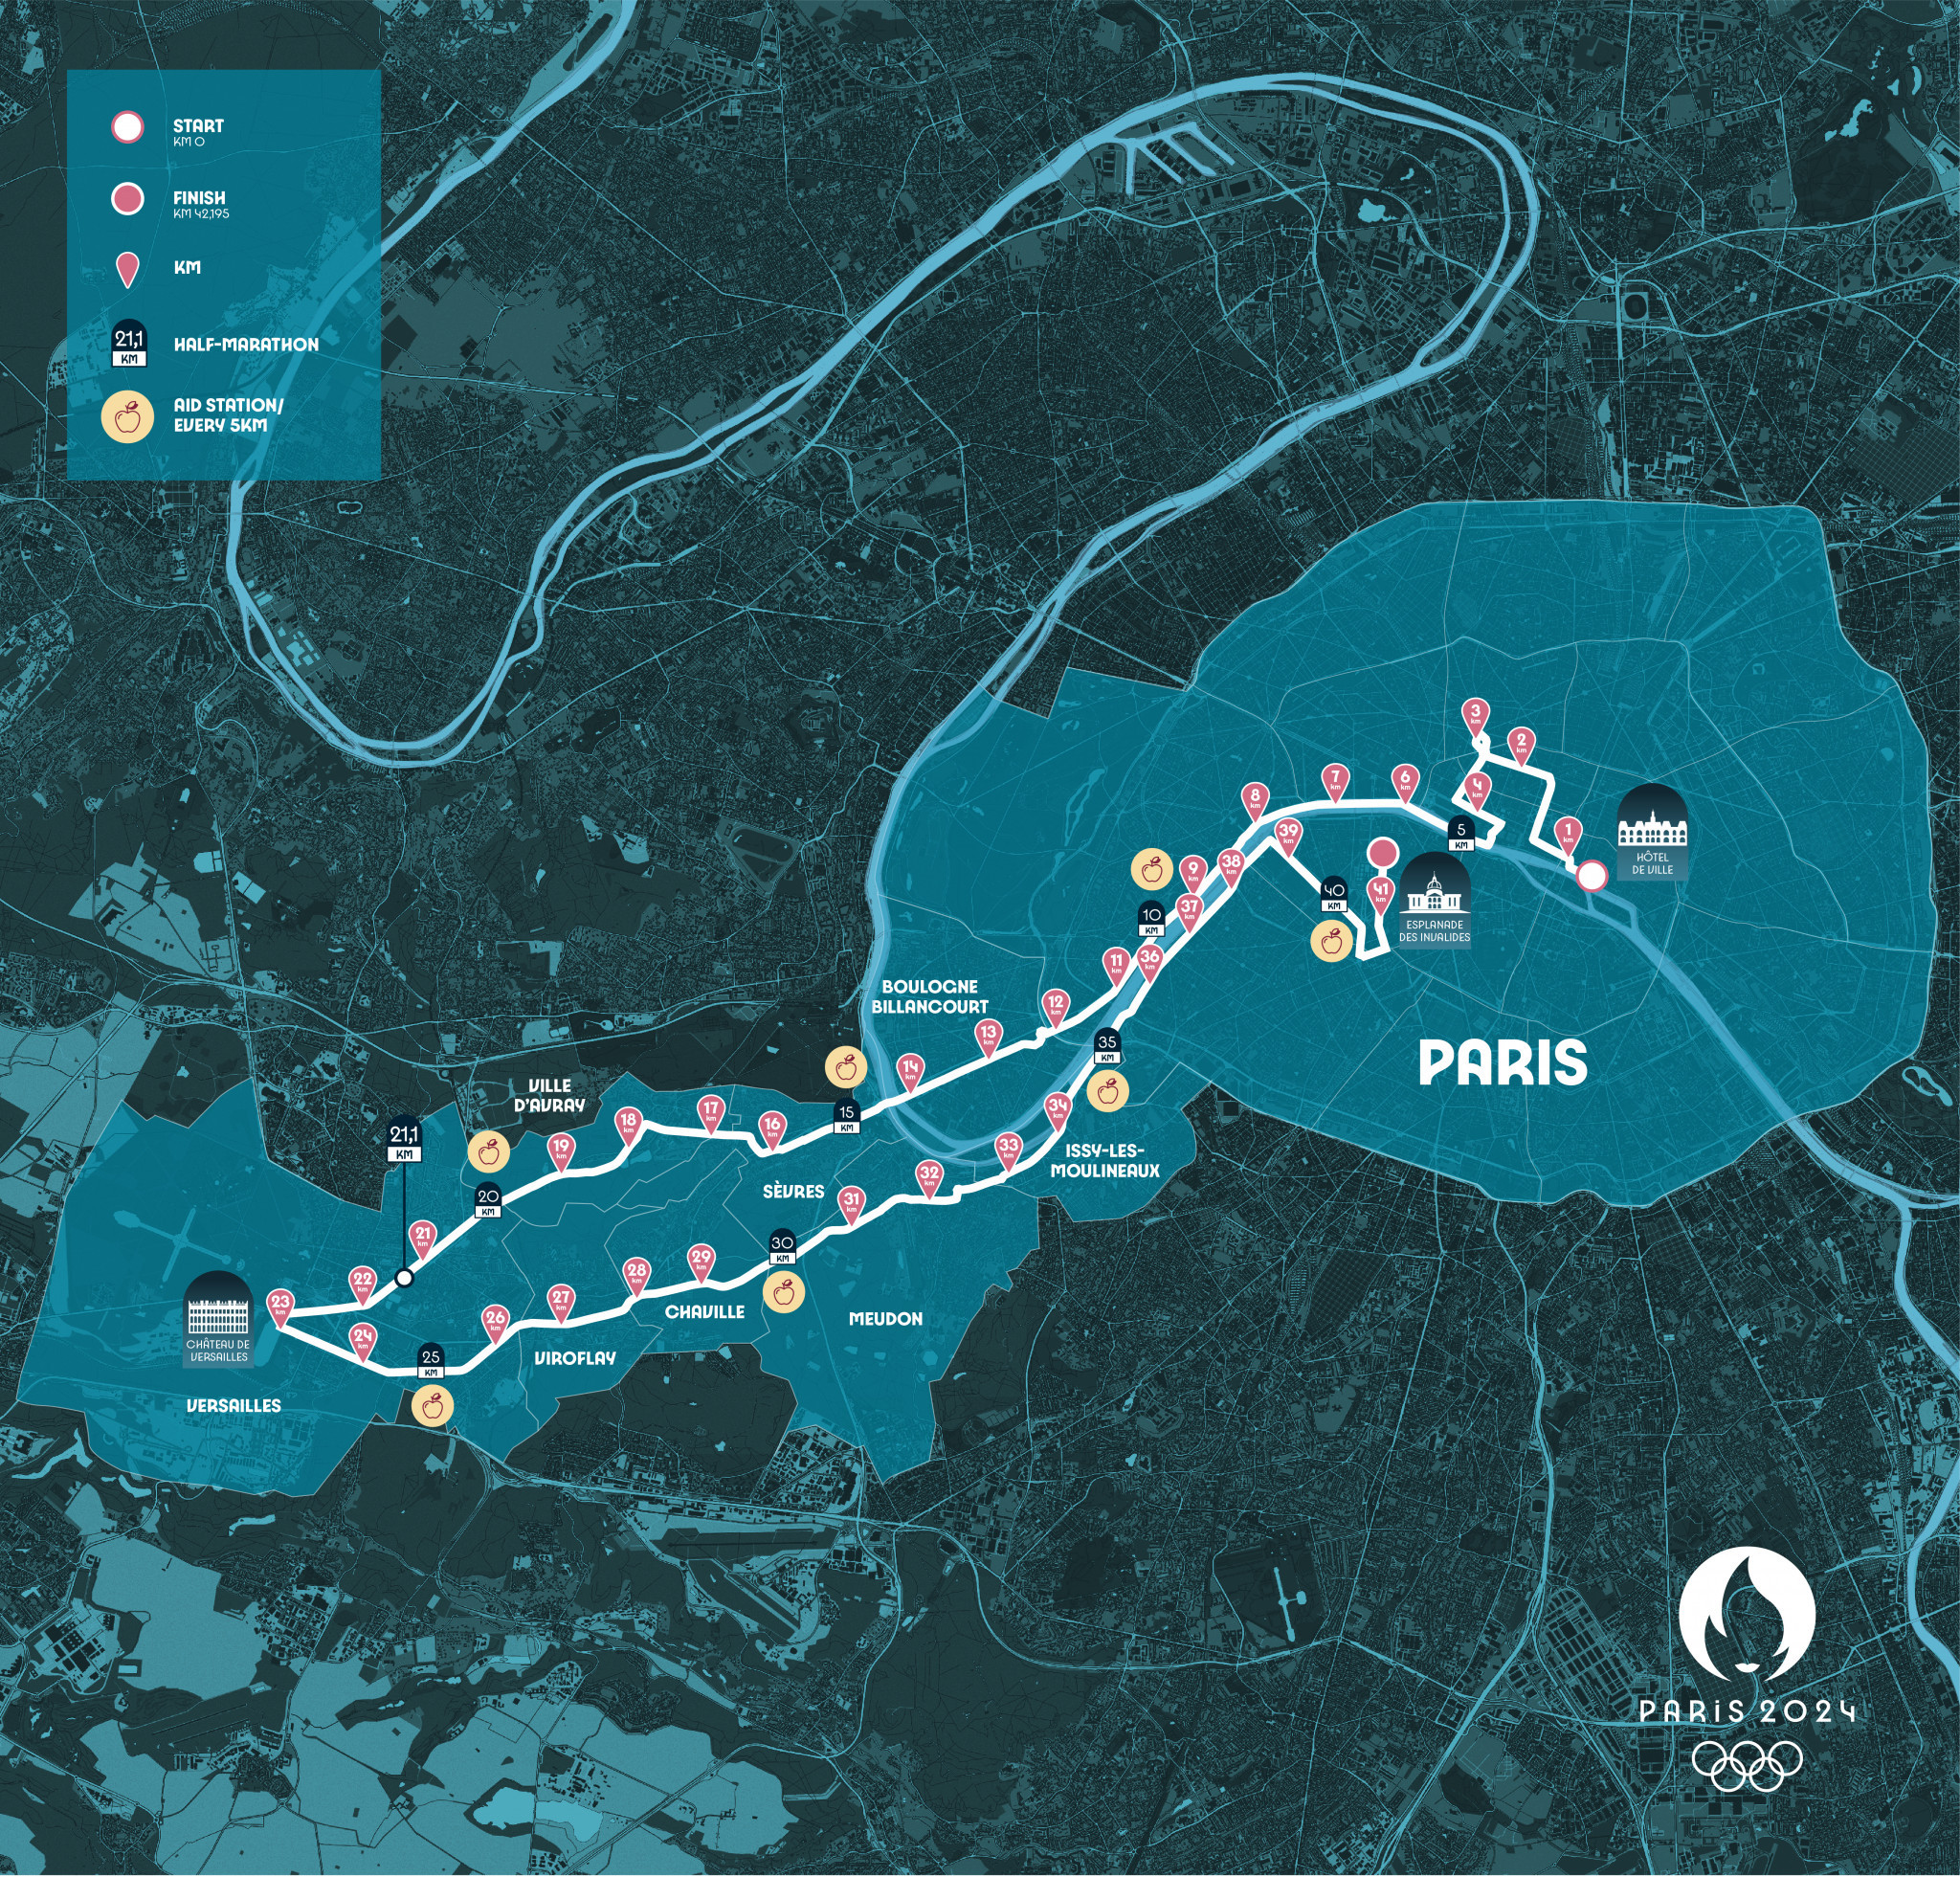 Paris 2024 has unveiled its marathon course for the next Olympics ©Paris 2024